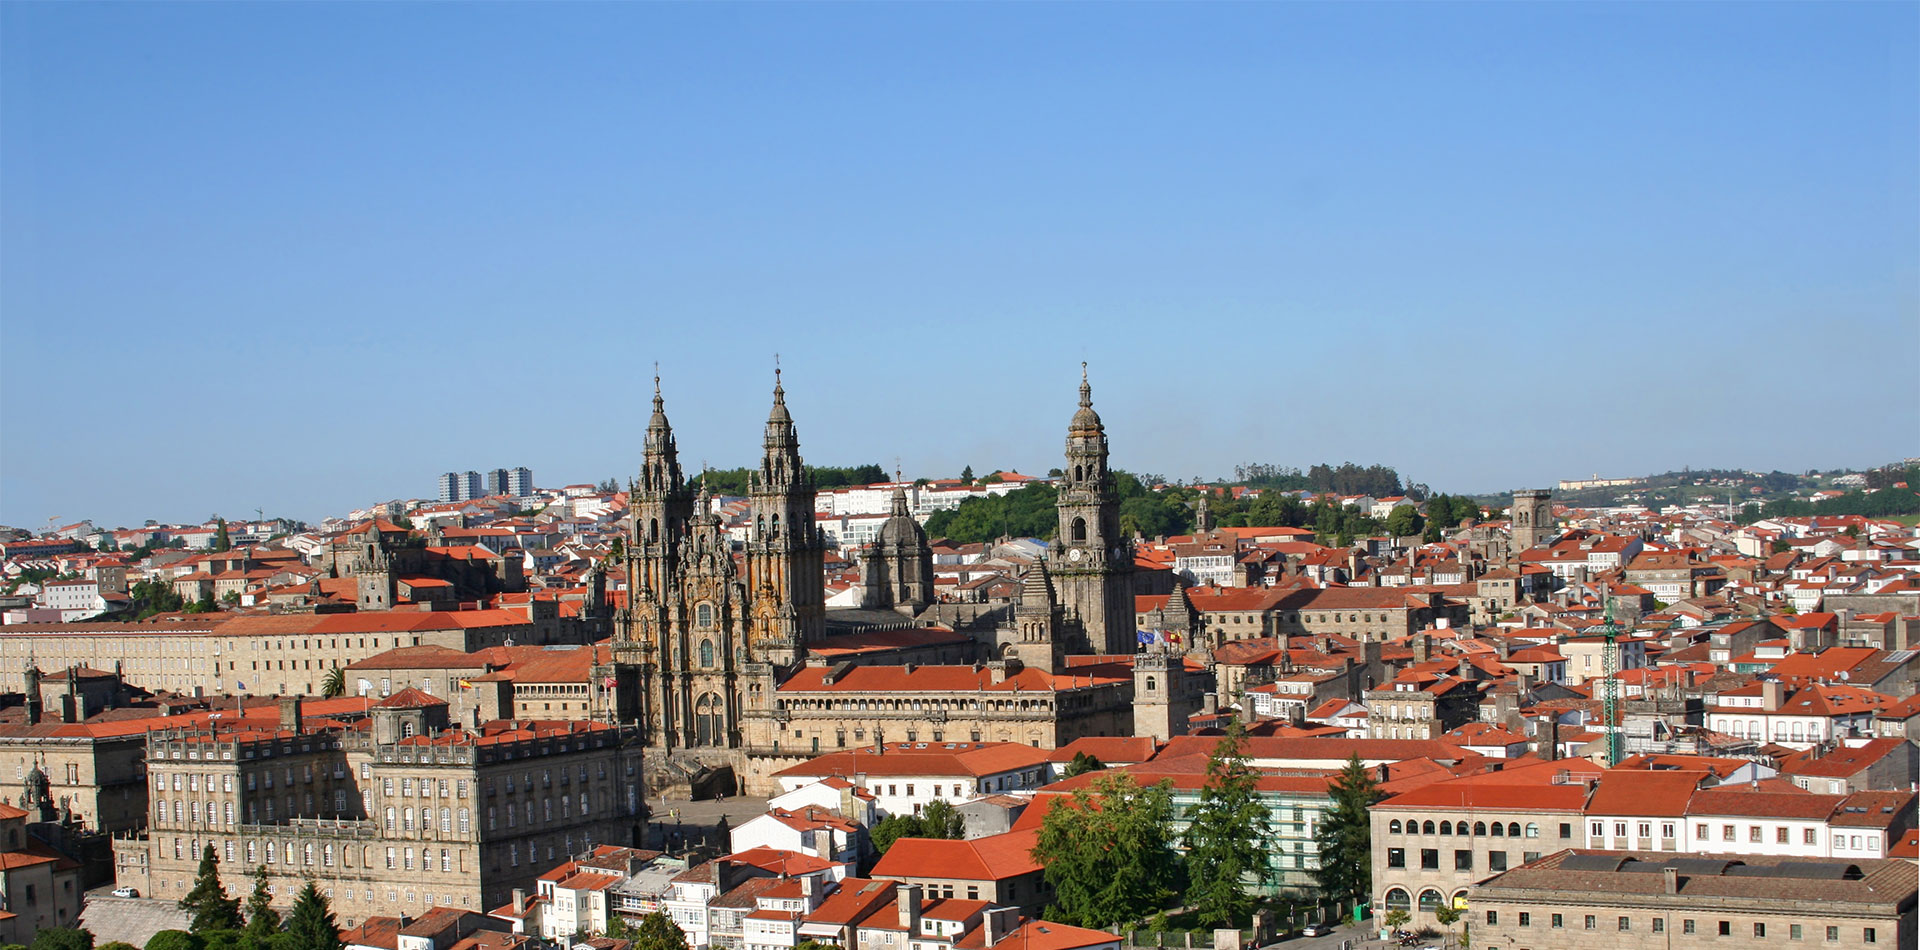 Santiago de Compostela, La Coruna, Spain